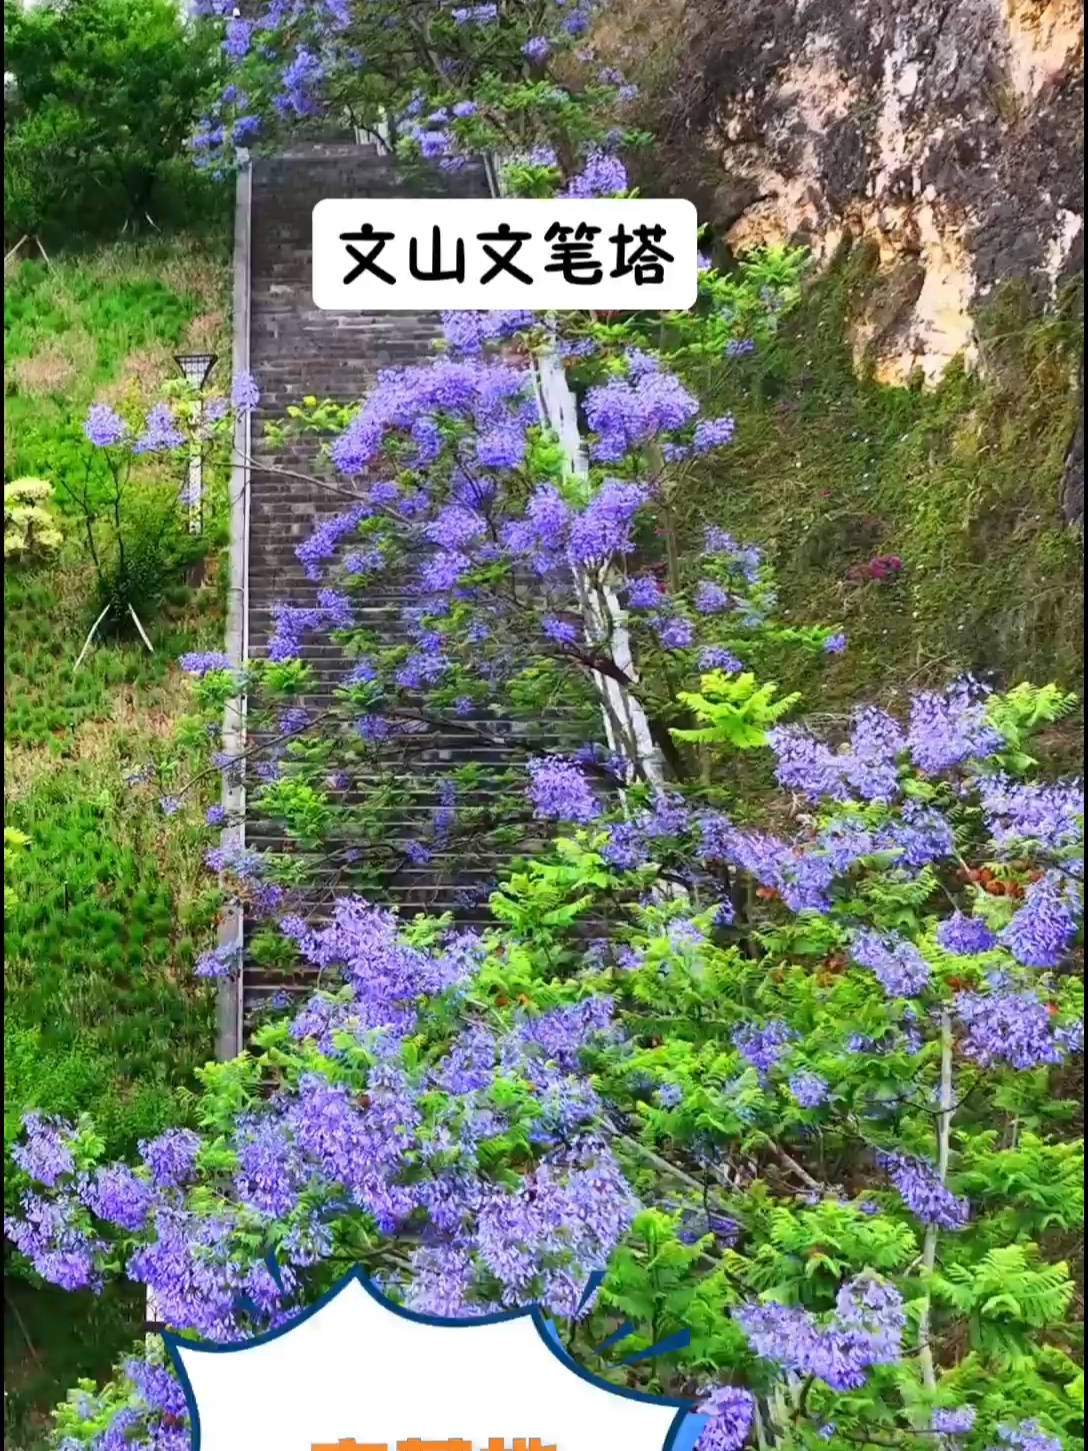 文山文笔塔公园的蓝花楹，必须要登高爬山才能领略到它的美丽！#蓝花楹 #文山周边游 #文山文笔塔